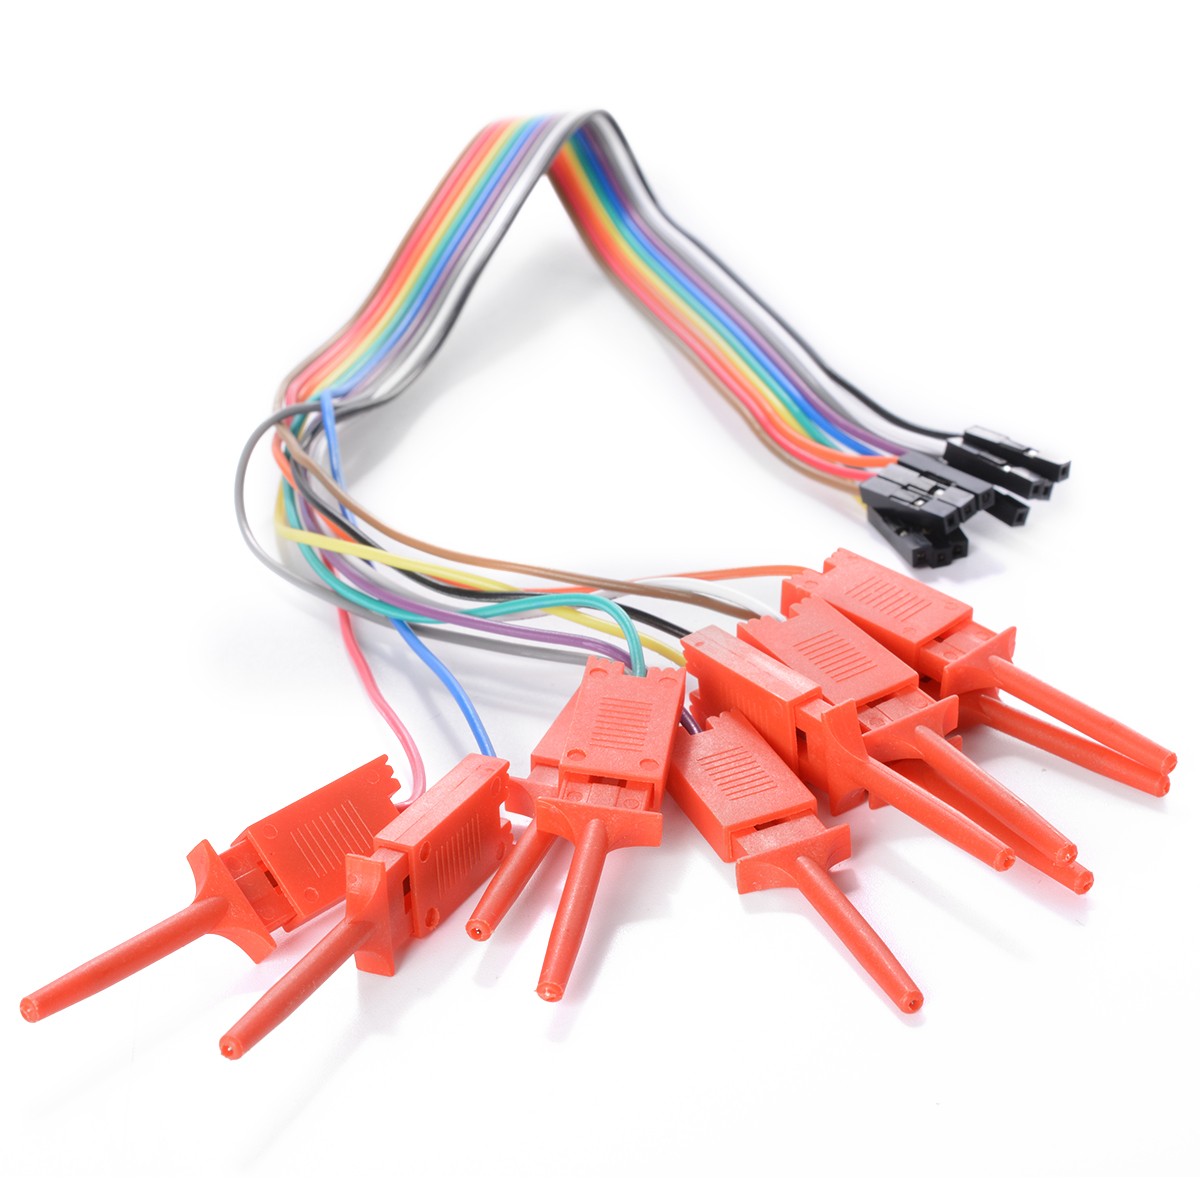 10-kanálový připojovací kabel s minisvorkou pro logický analyzátor Saleae